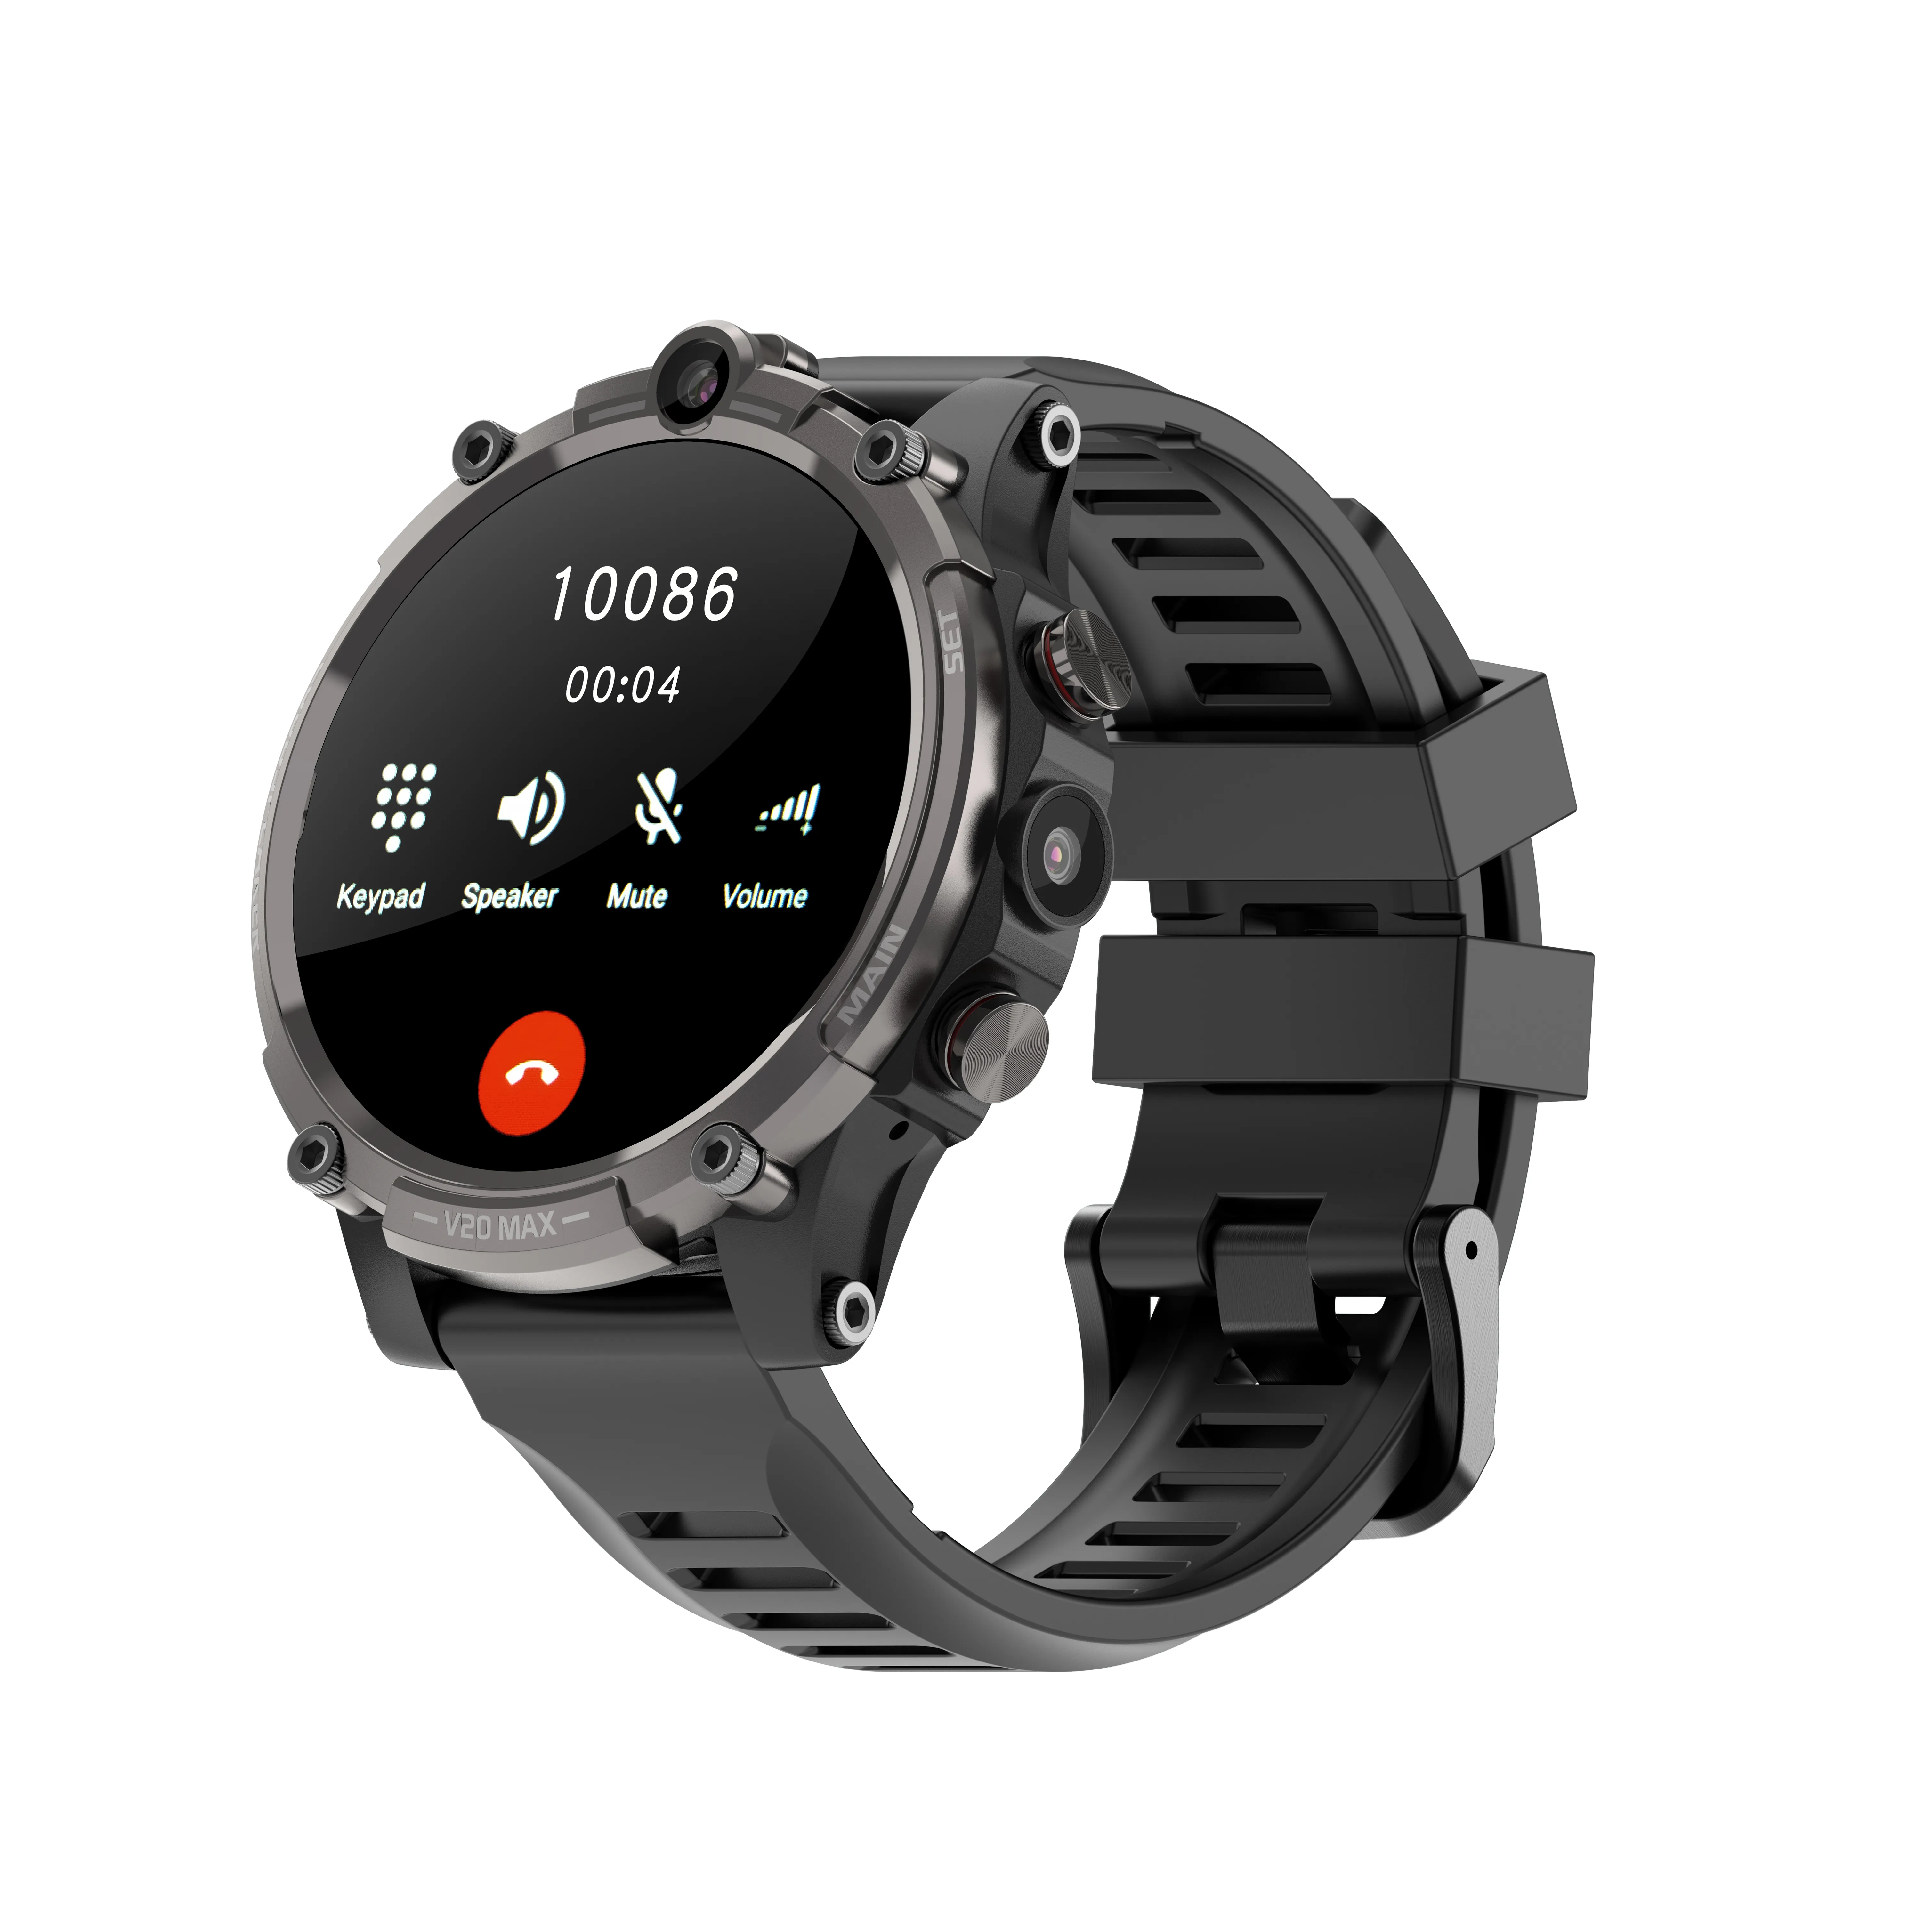 4G LTE Handys SIM-Karte Smart Watch Fitness Tracker Sport IP68 Wasserdicht Herzfrequenz Blutdruck GPS Smartwatch IOS Android-Handy Uhren 128GB 2MP Kameras